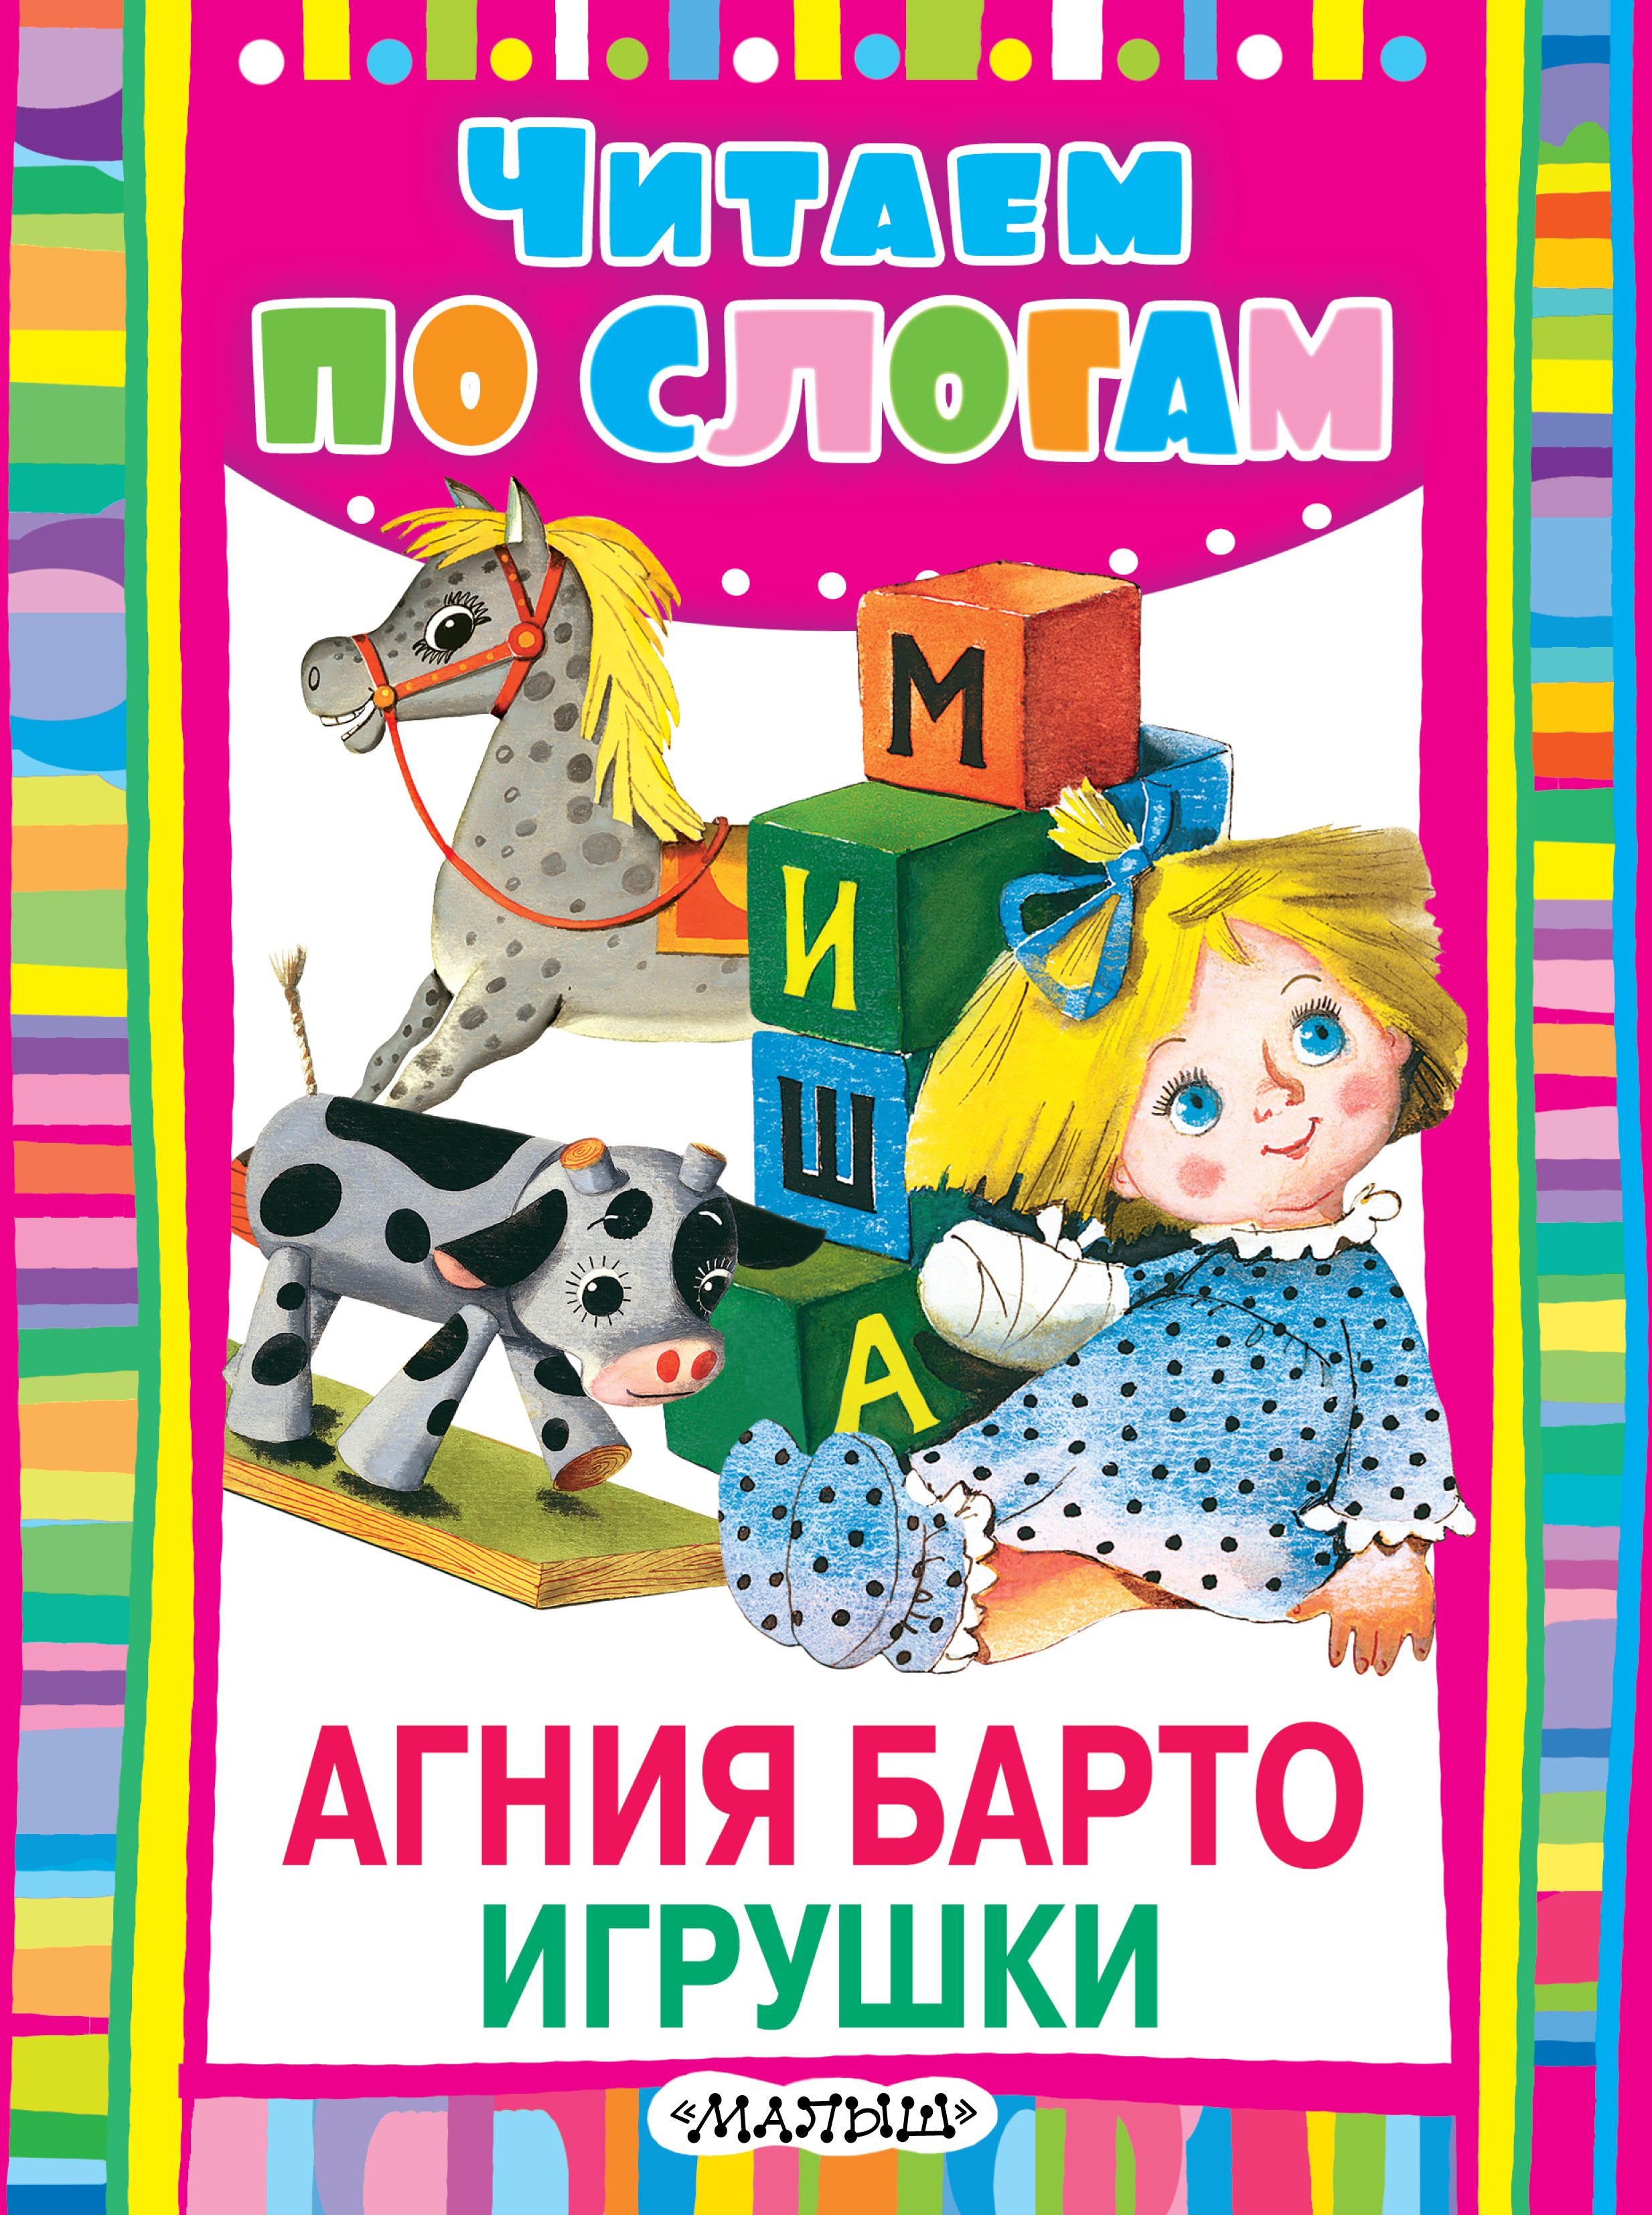 Книги про игрушки. А. Барто "игрушки". Книжка Барто игрушки. Книги Барто.